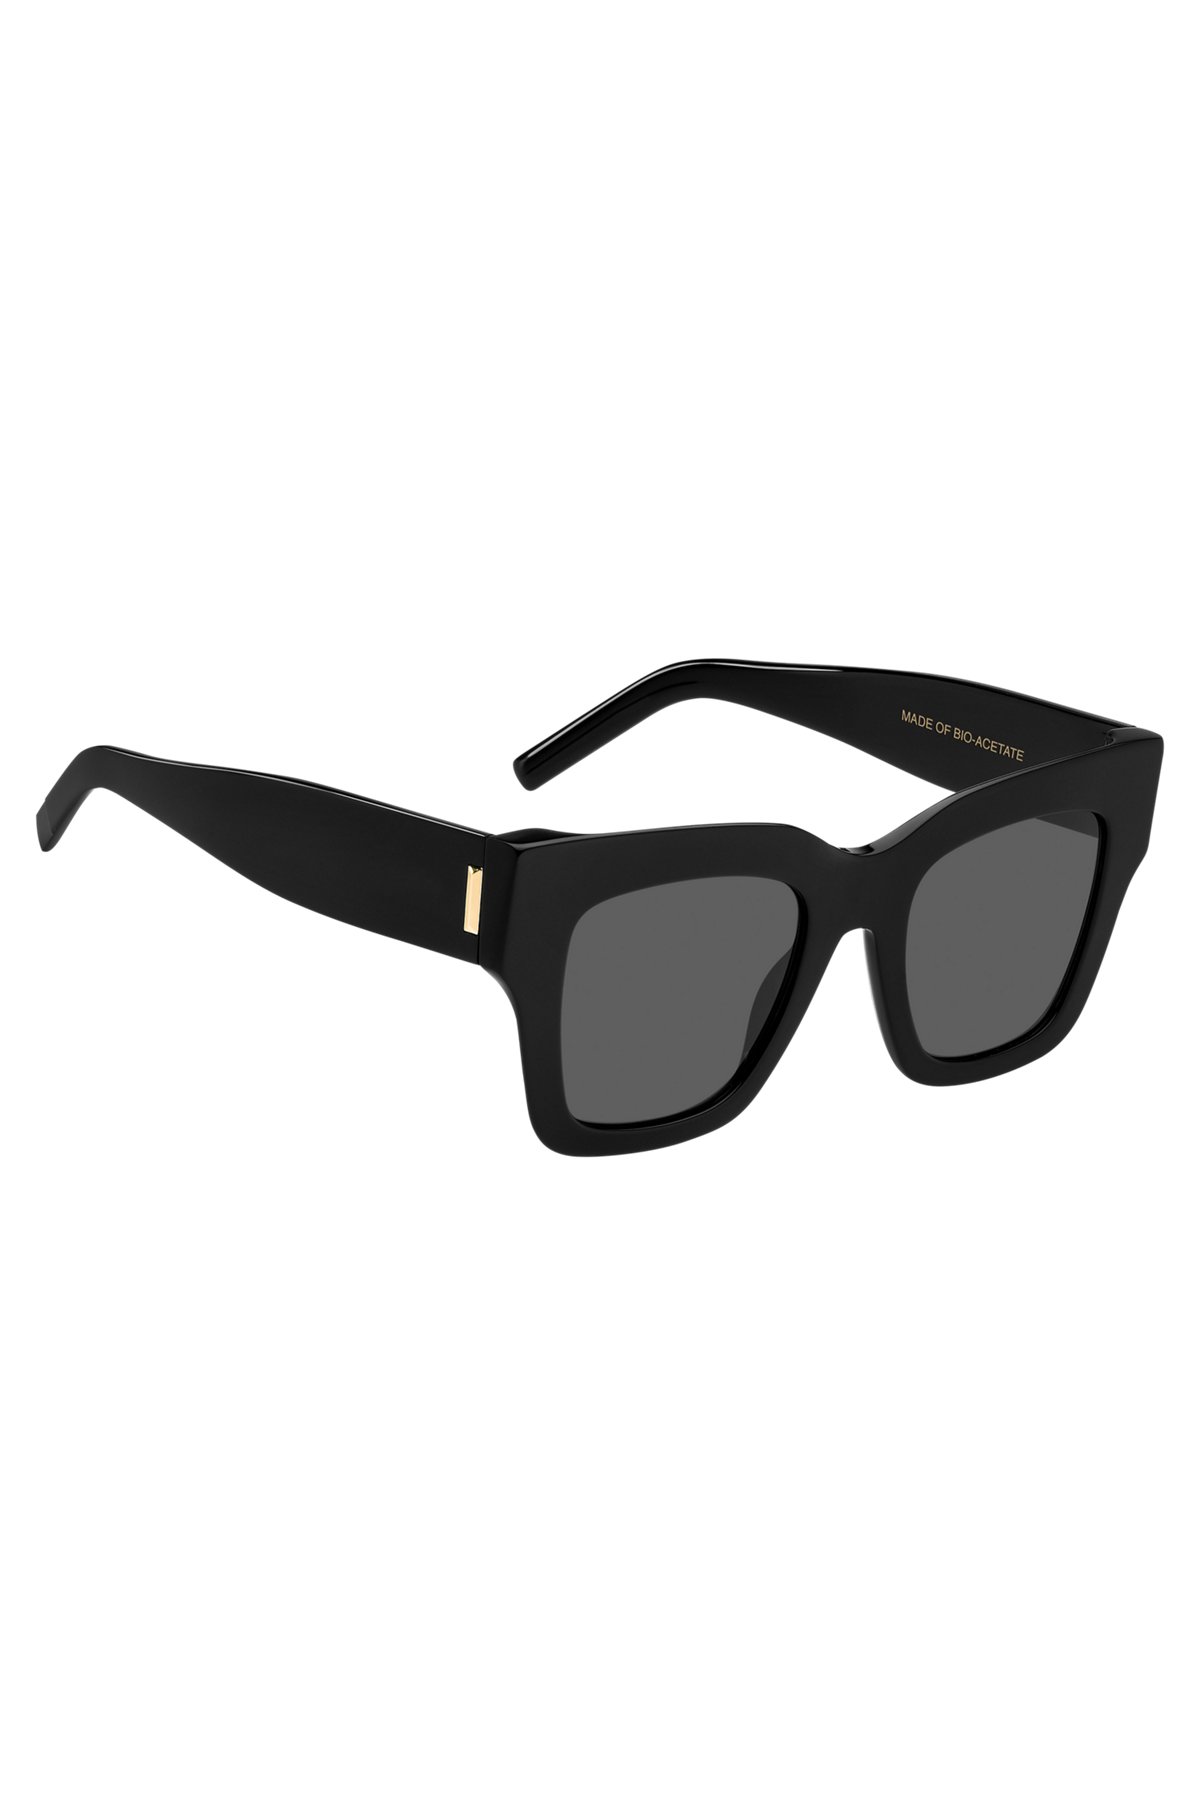 Black-acetate sunglasses with signature hardware, Black